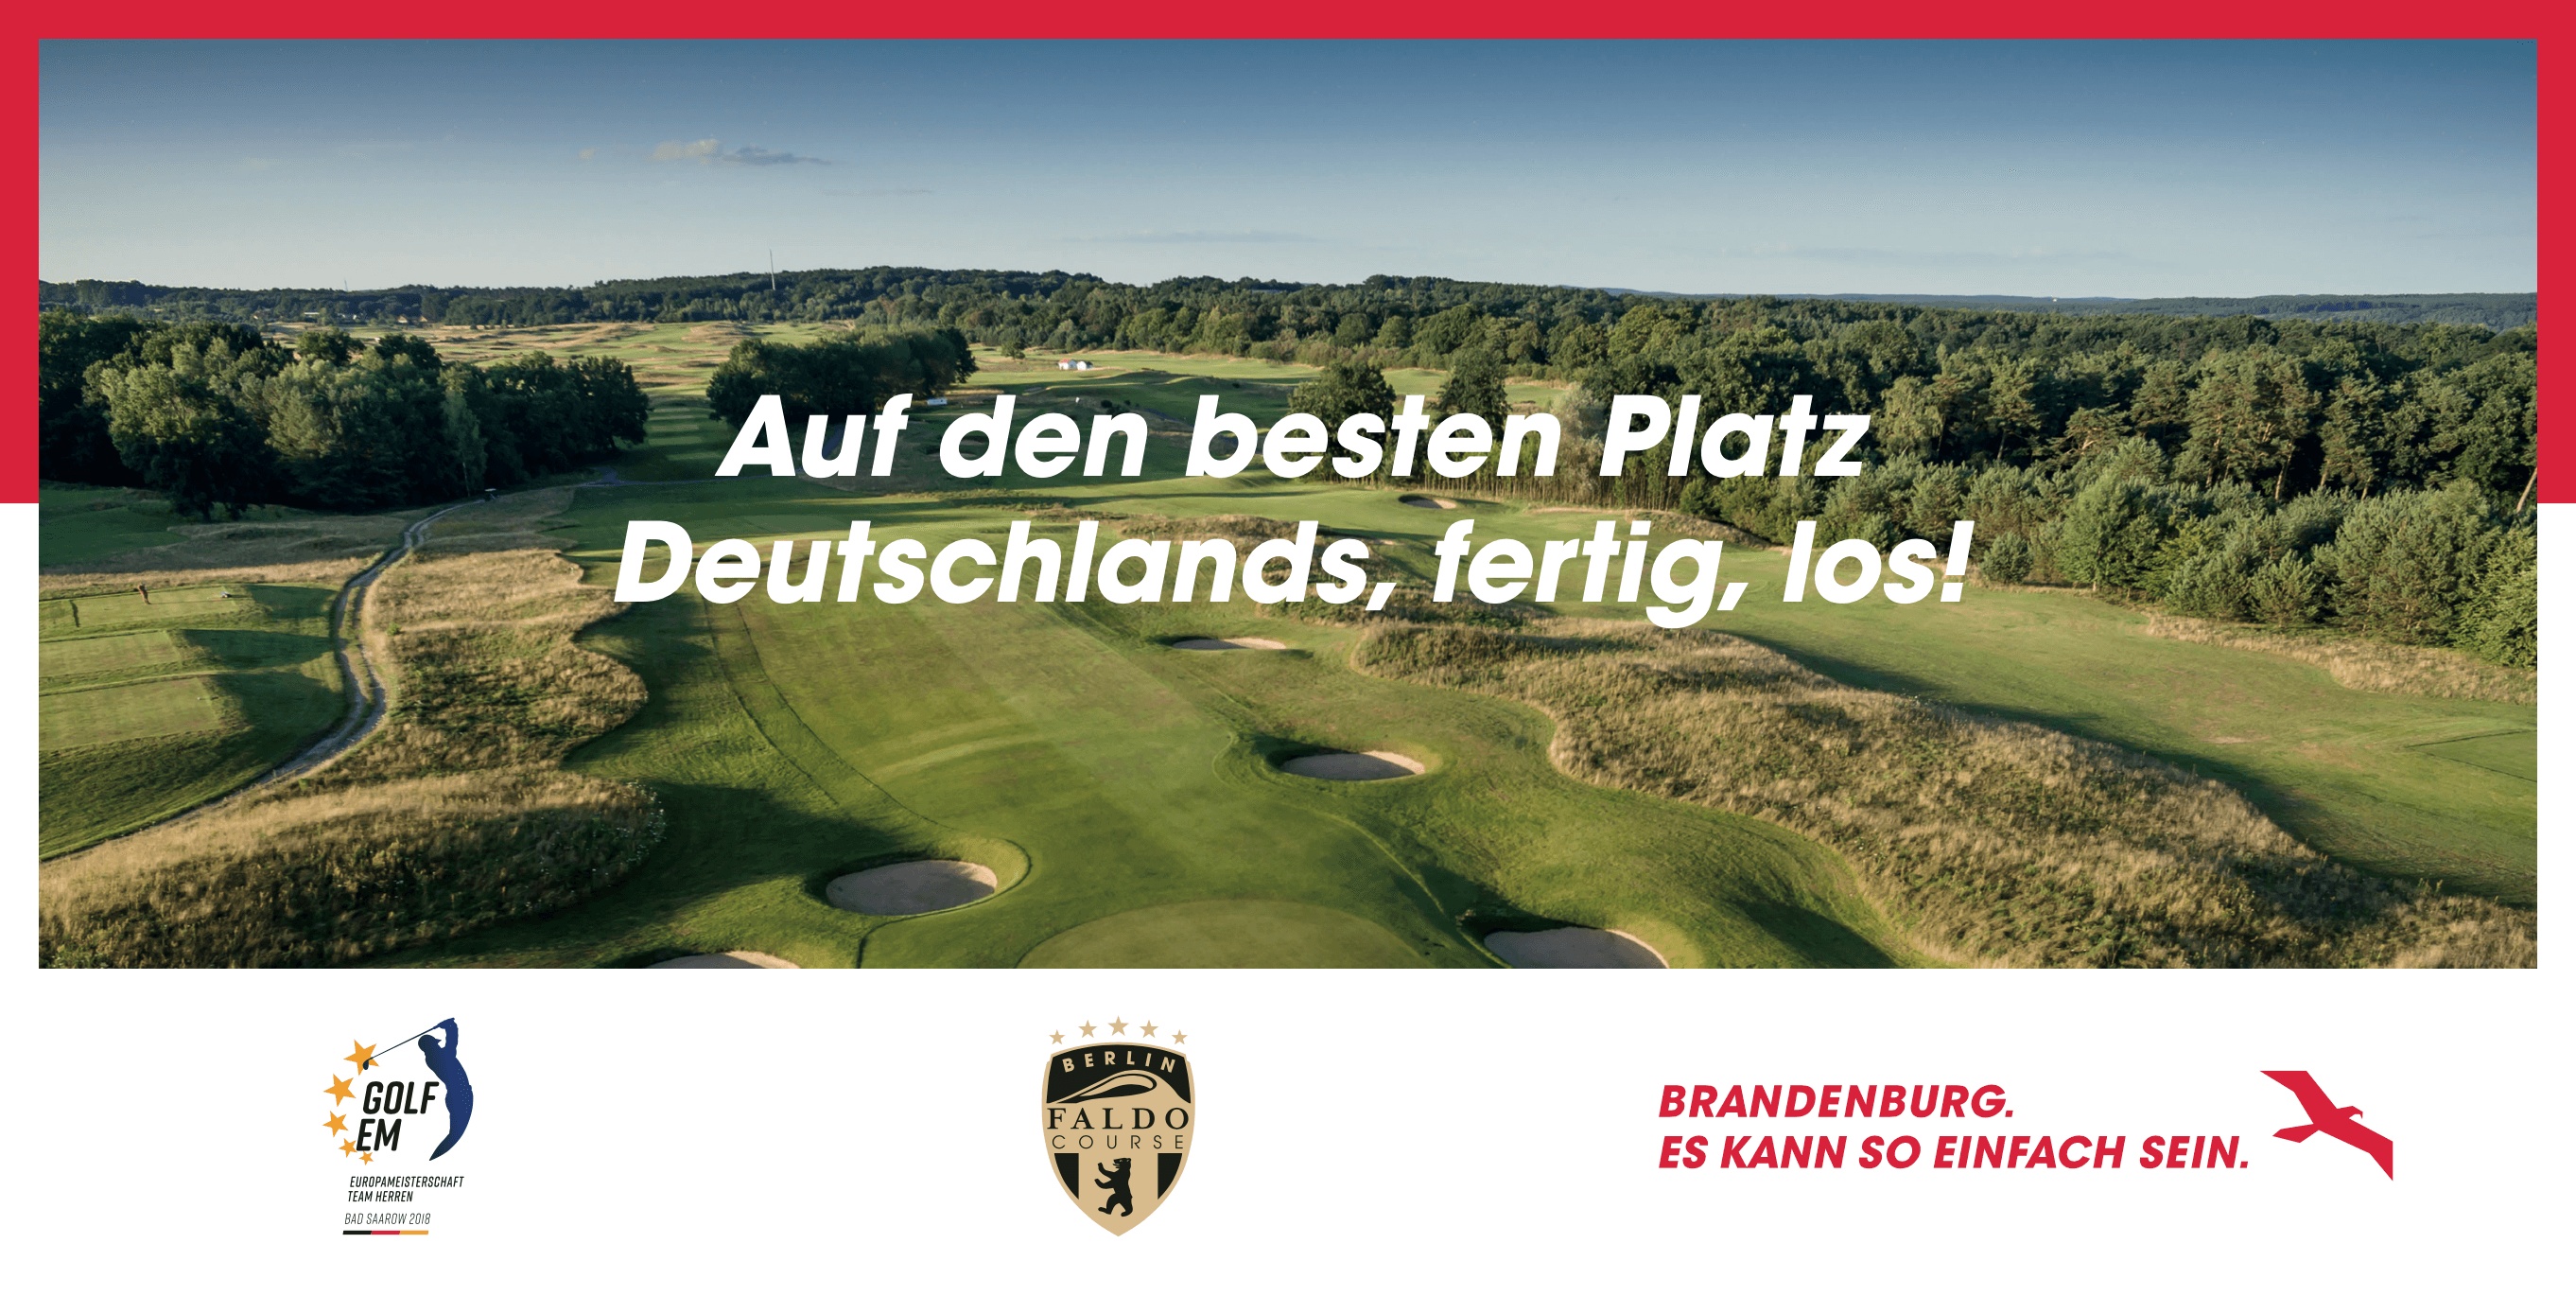 Ein Golfplatz von oben. Darauf der Schriftzug "Auf den besten Platz Deutschlands, fertig, los!". Unten die Logos der Golf-EM und des Berlin Faldo Course. Daneben das Kampagnenmotiv von "Brandenburg. Es kann so einfach sein."